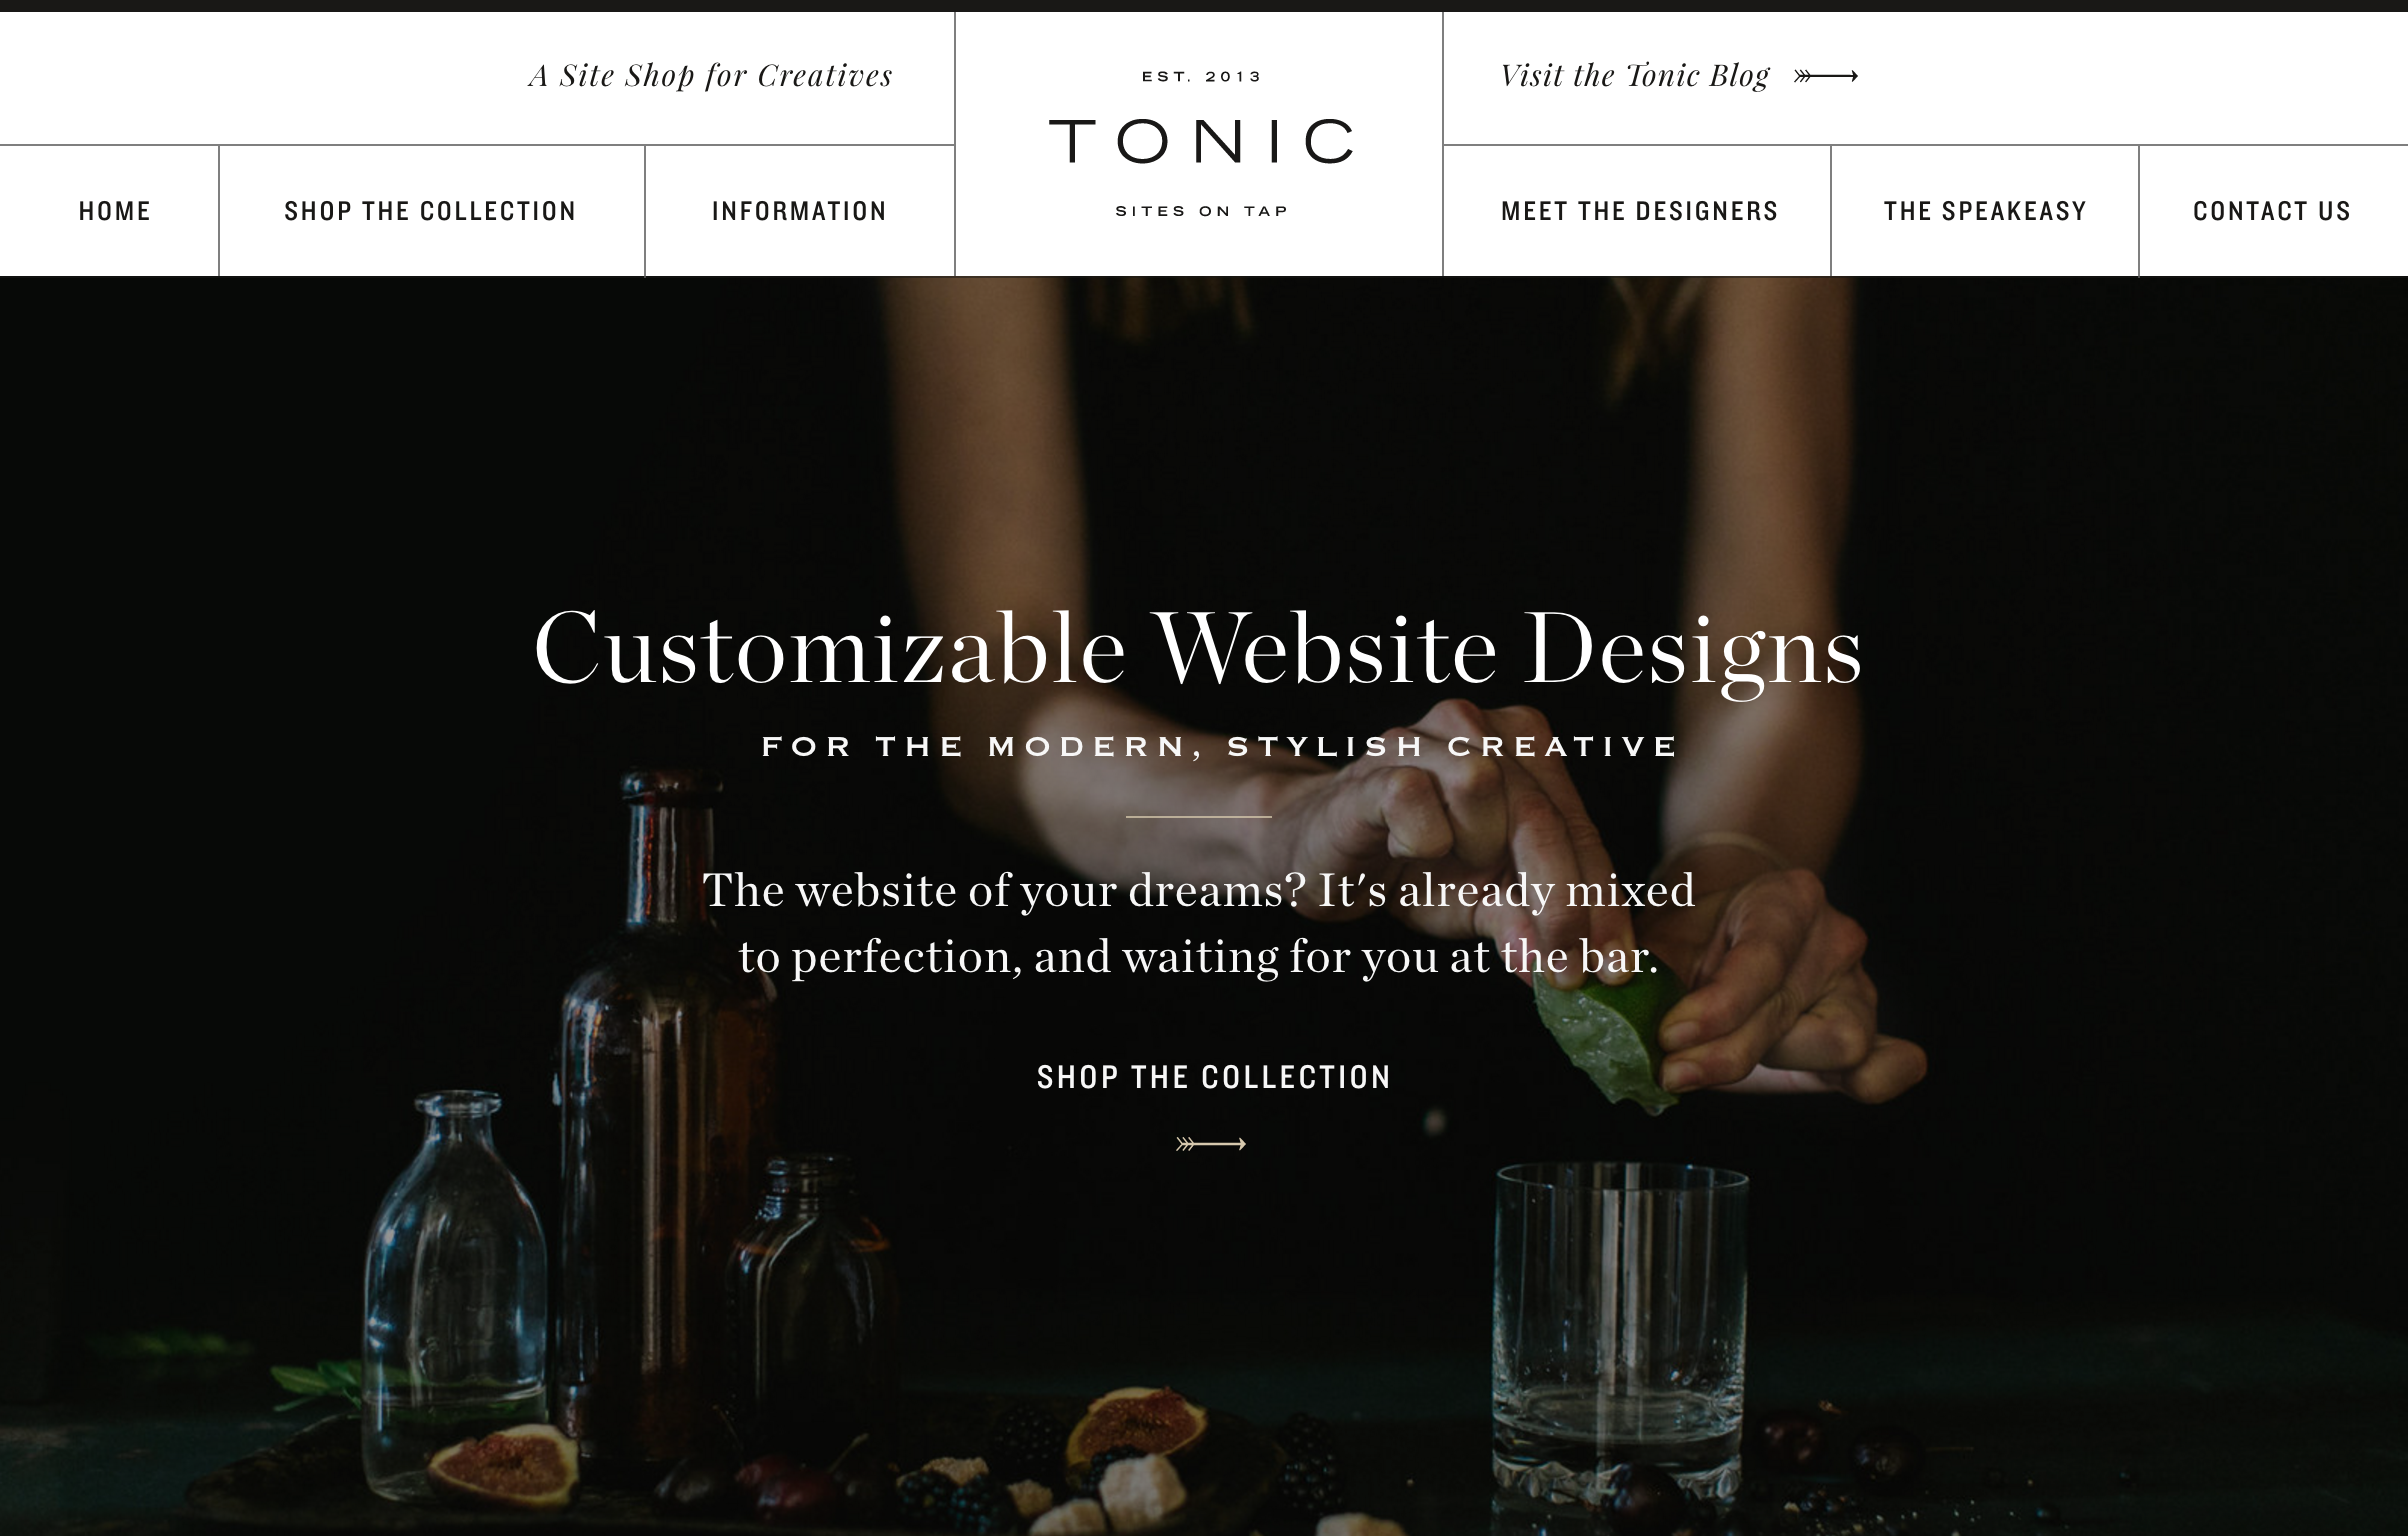 Tonic Site Shop-01